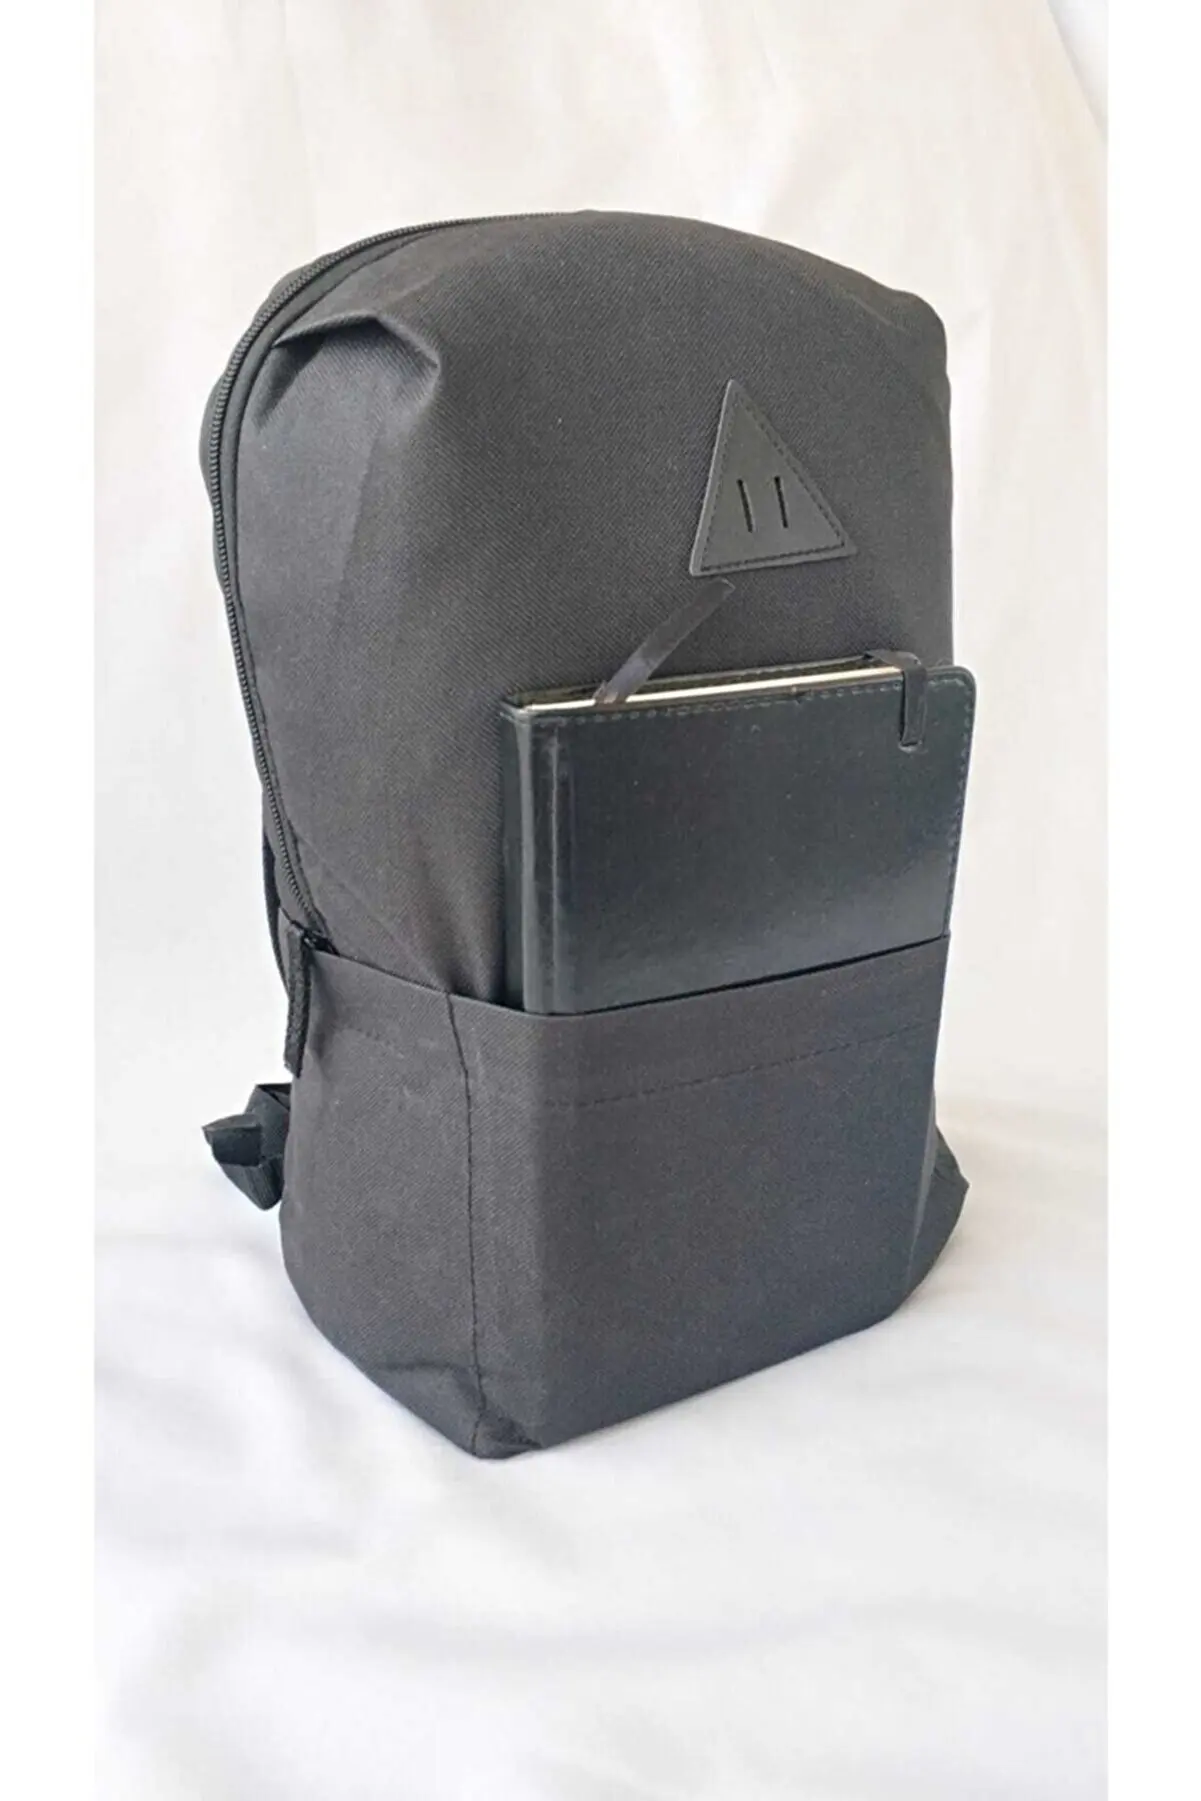 Холщовый Рюкзак-ежедневная школьная сумка, продукт для событий, хлопковая ткань для женщин и мужчин, унисекс, Водонепроницаемая молния